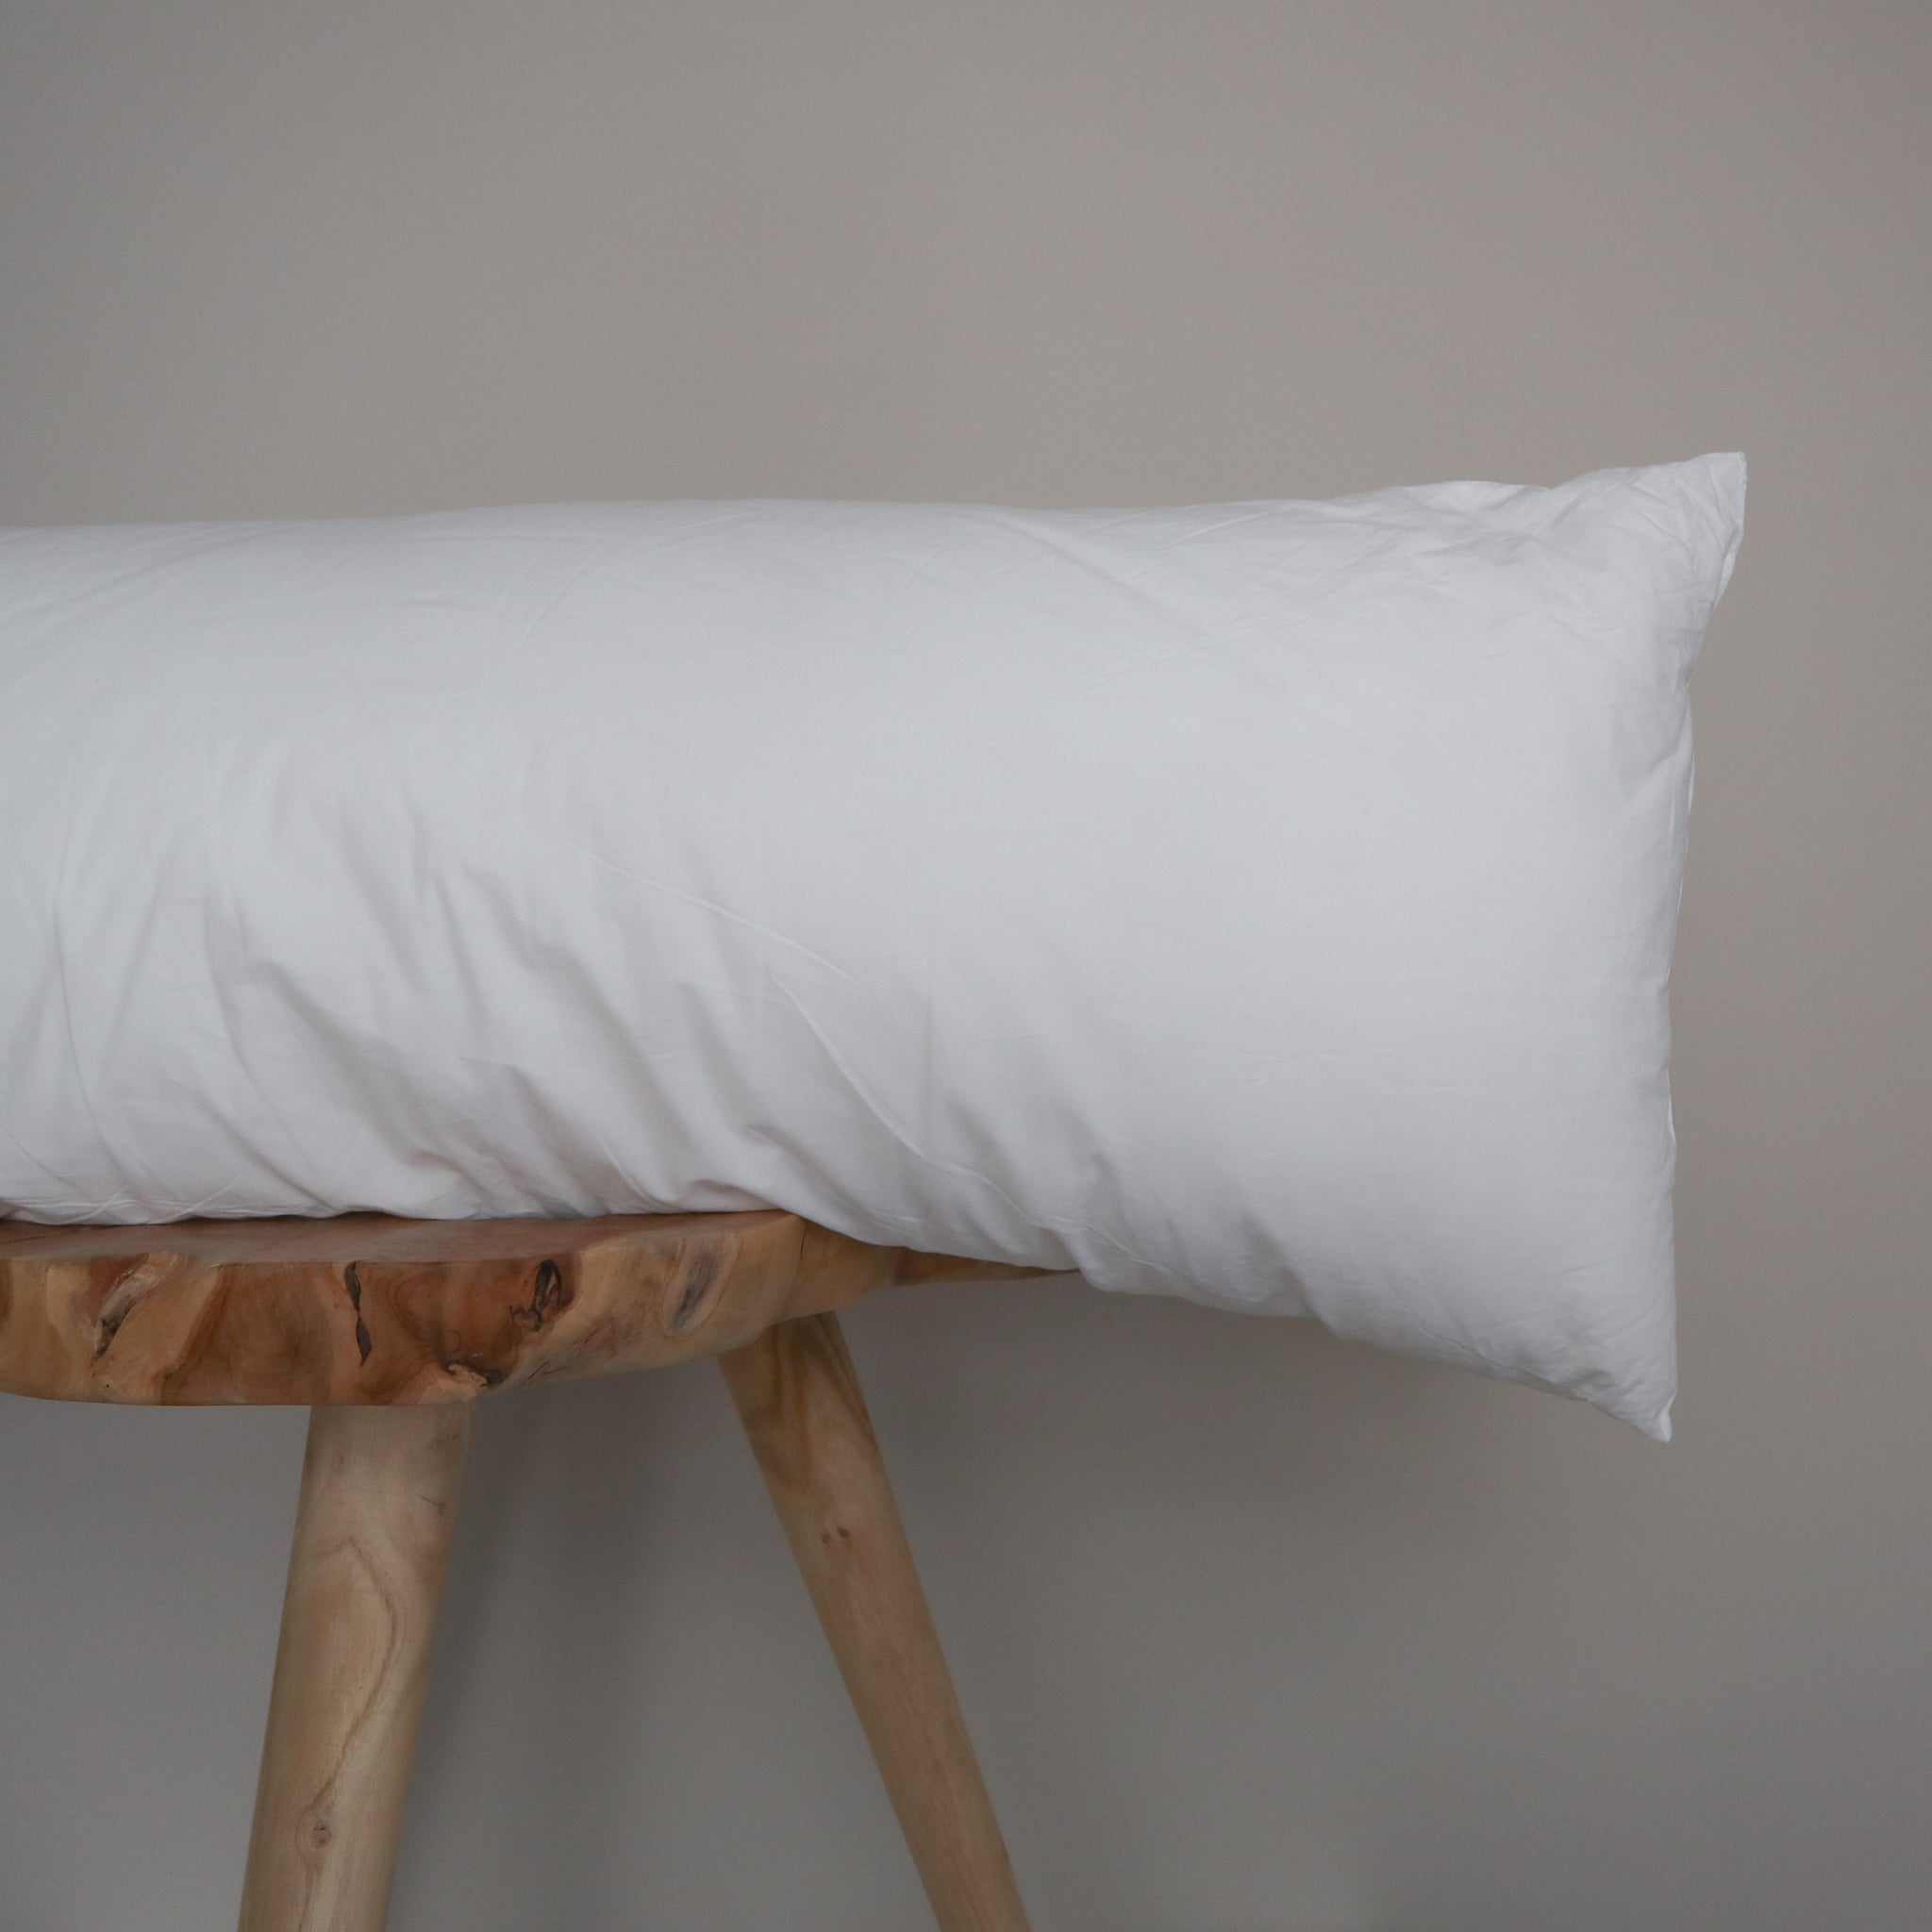  Pillowflex Synthetic Down Pillow Insert - 14x36